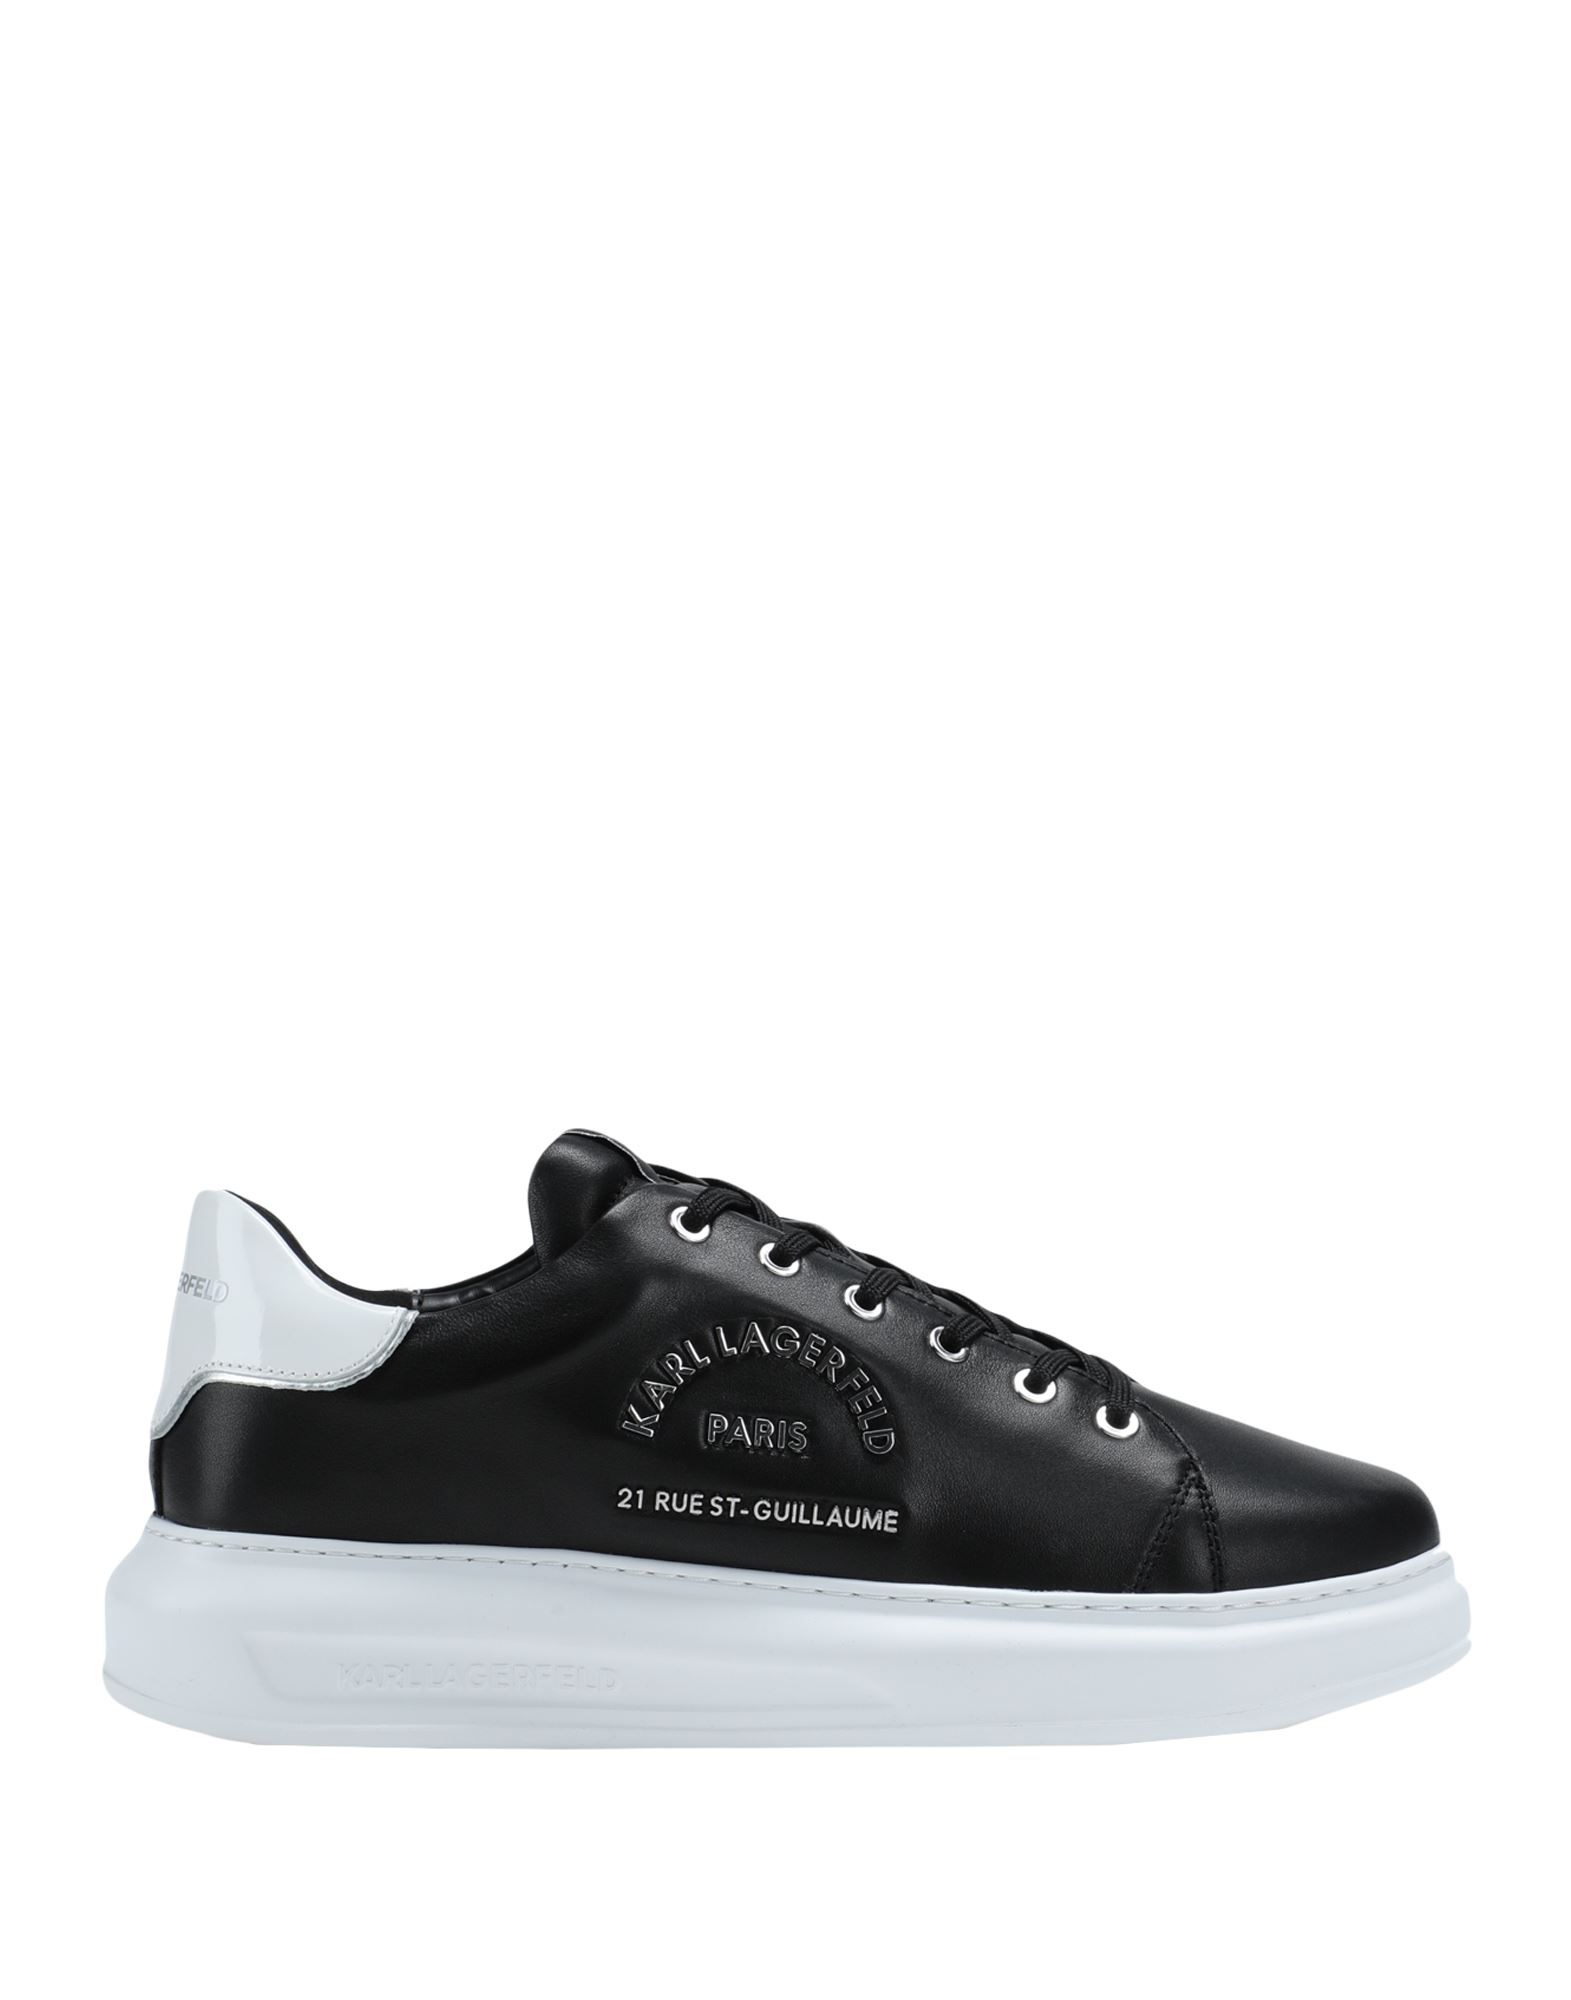 Karl Lagerfeld Sneakers In Black